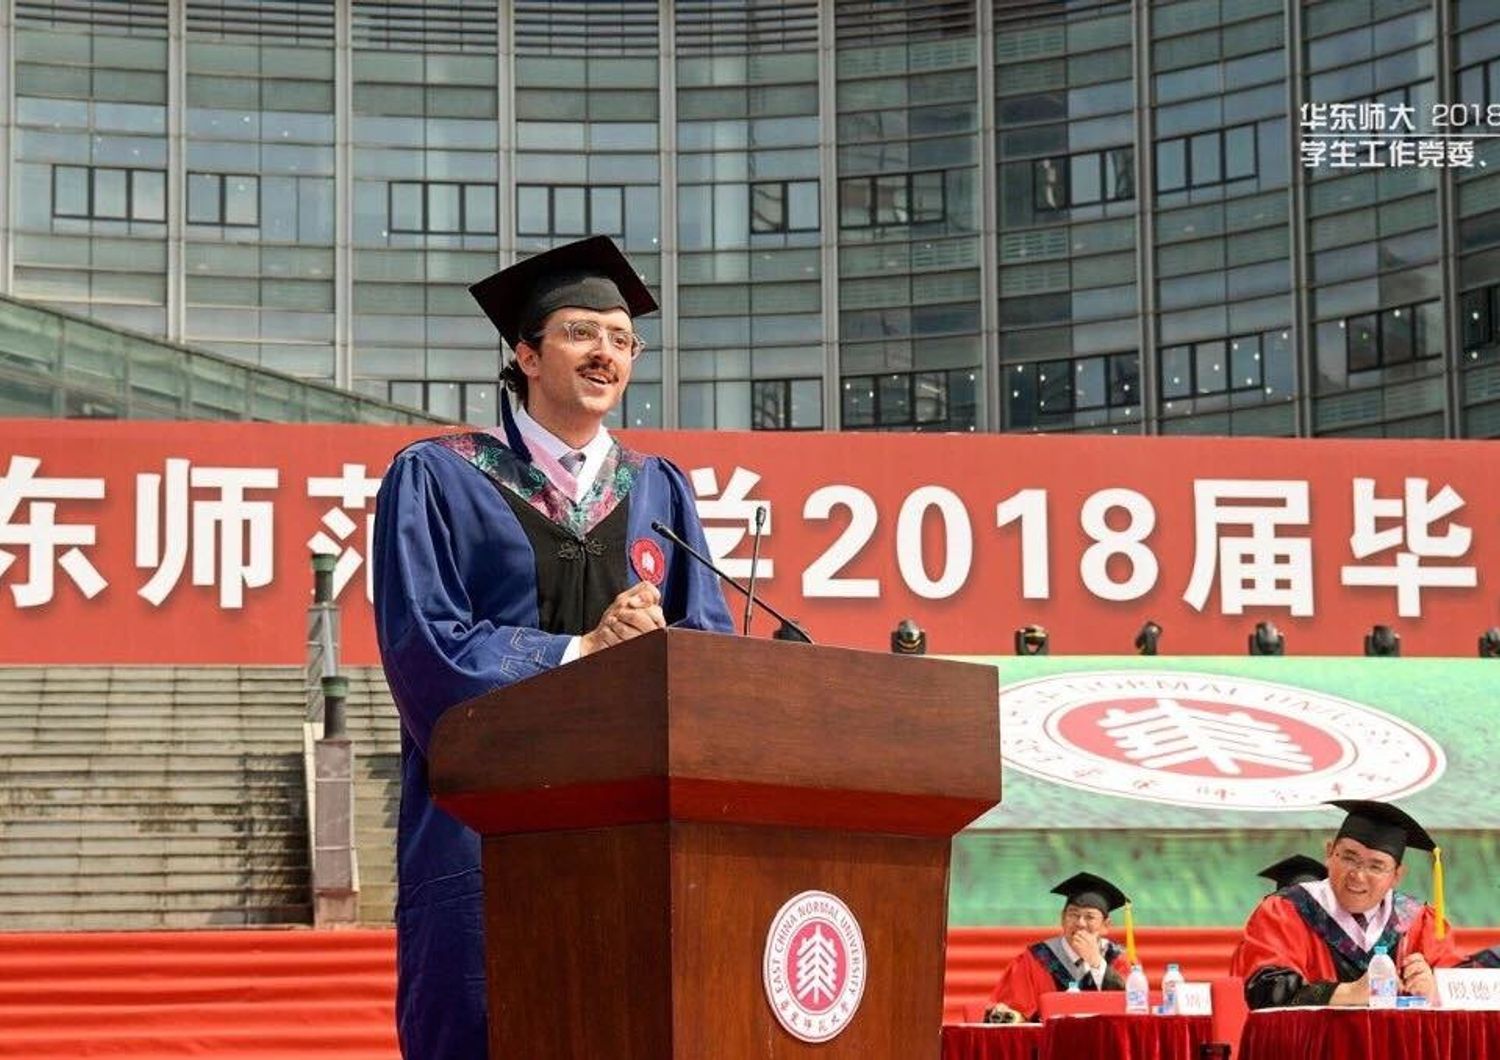 &nbsp;Carlo Dragonetti durante la cerimonia di consegna dei diplomi all'universit&agrave; Normale di Shanghai